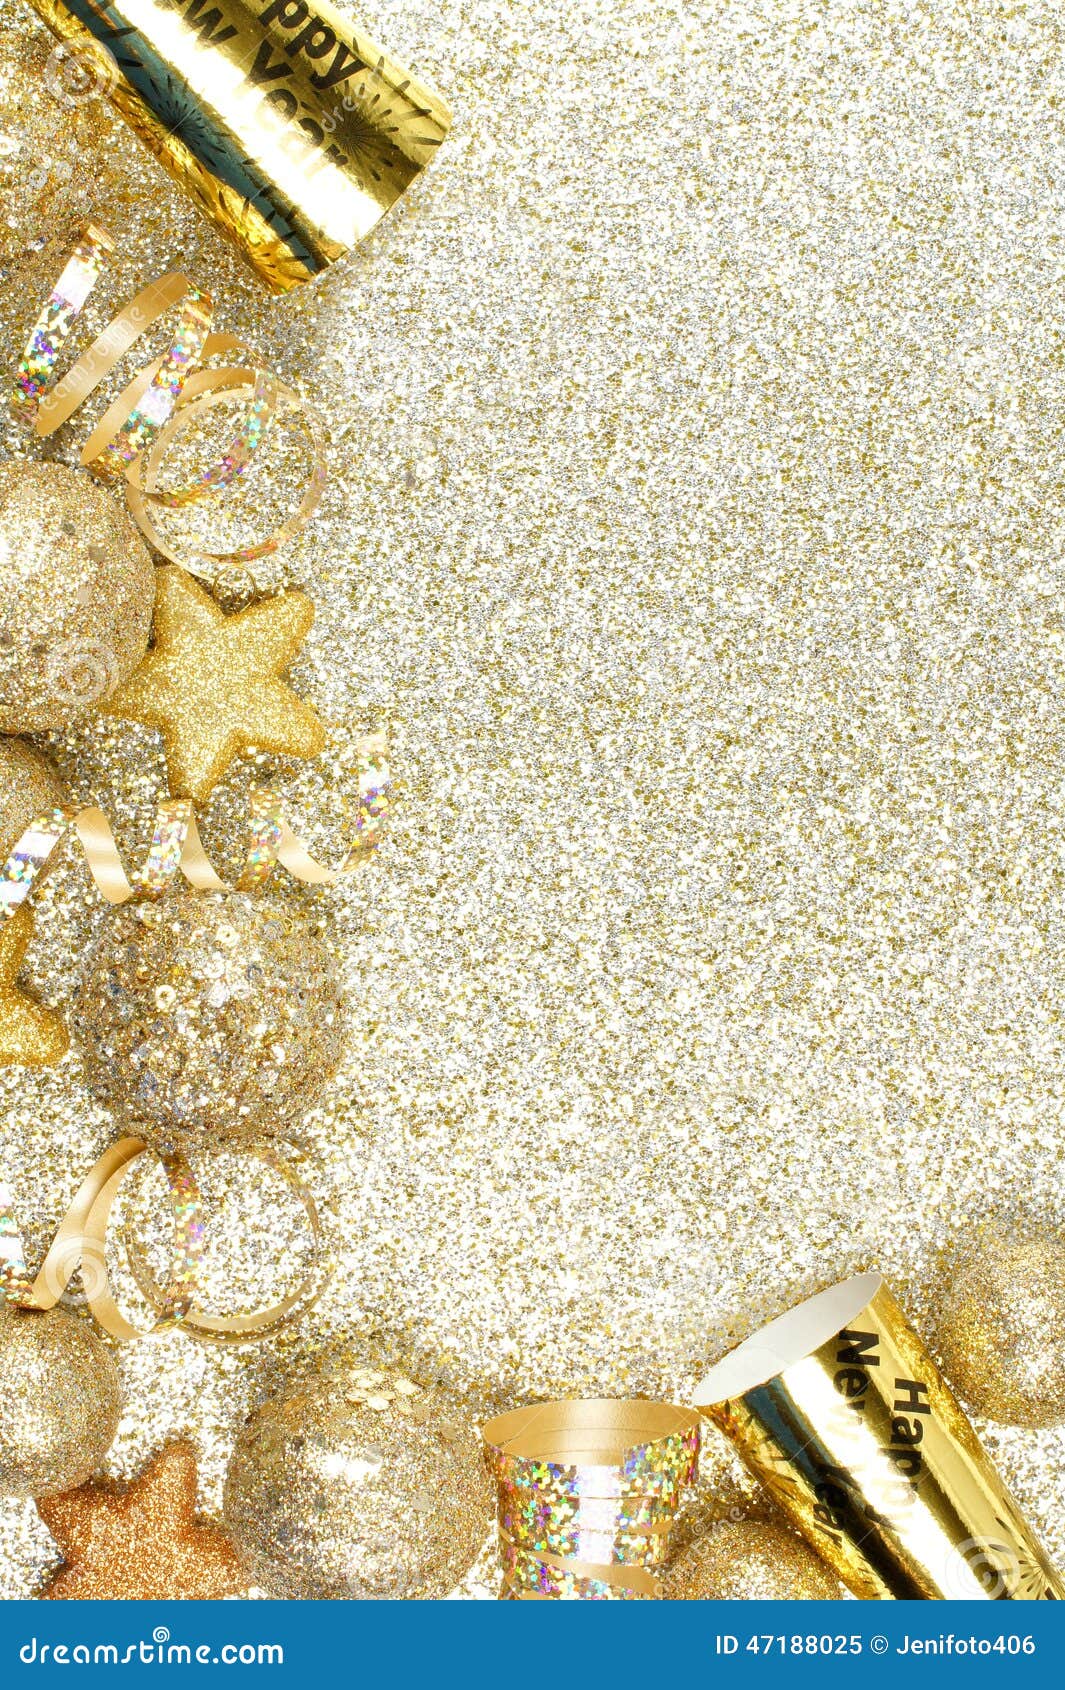 New Years Eve Border on Shiny Gold Background Stock Image - Image of  festive, bright: 47188025